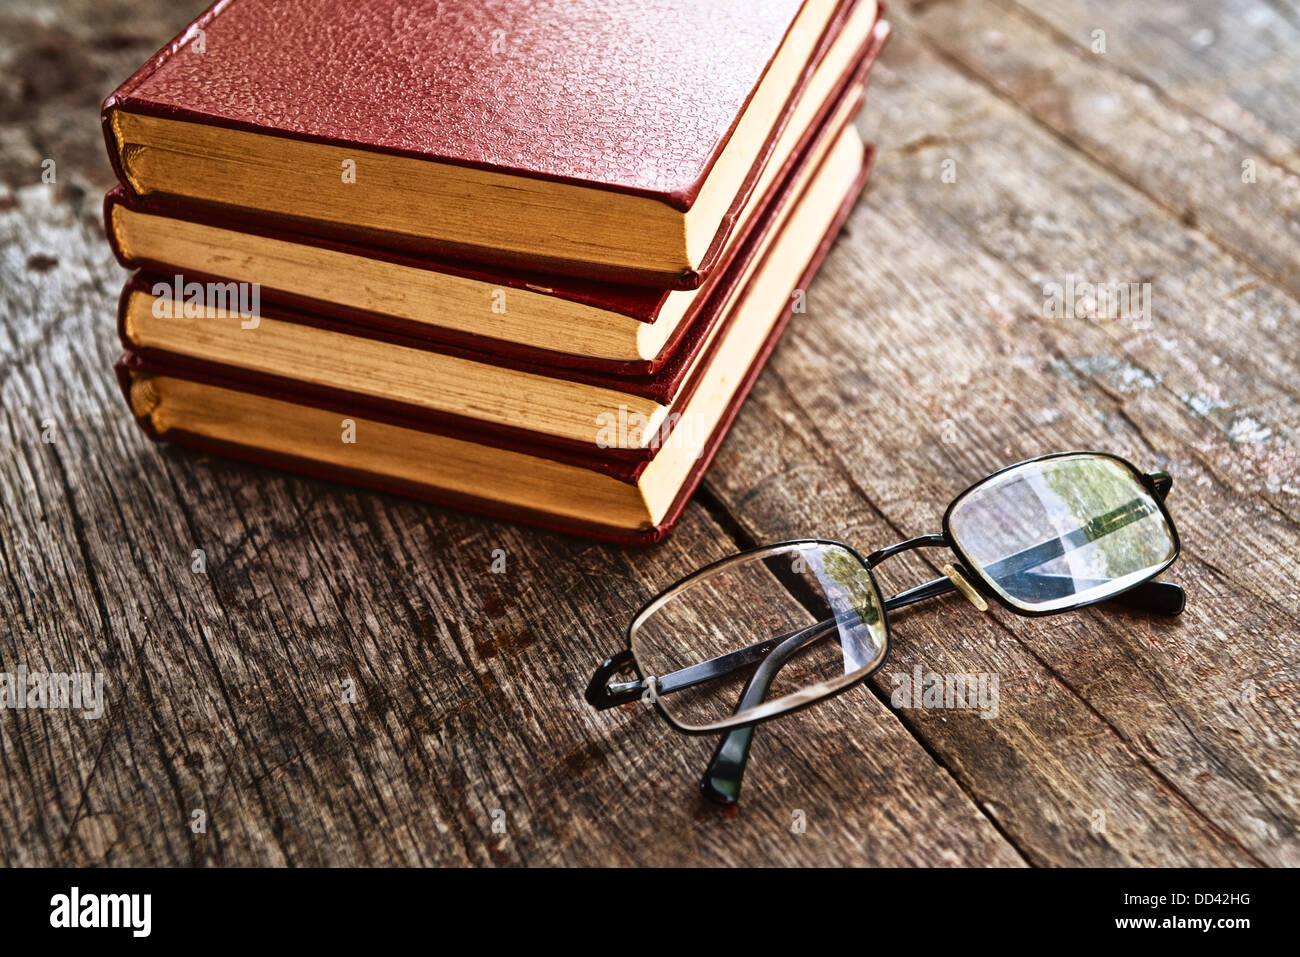 Libros y gafas de lectura sobre la mesa. Pila de libros de tapa dura sobre la mesa de madera antigua. Foto de stock